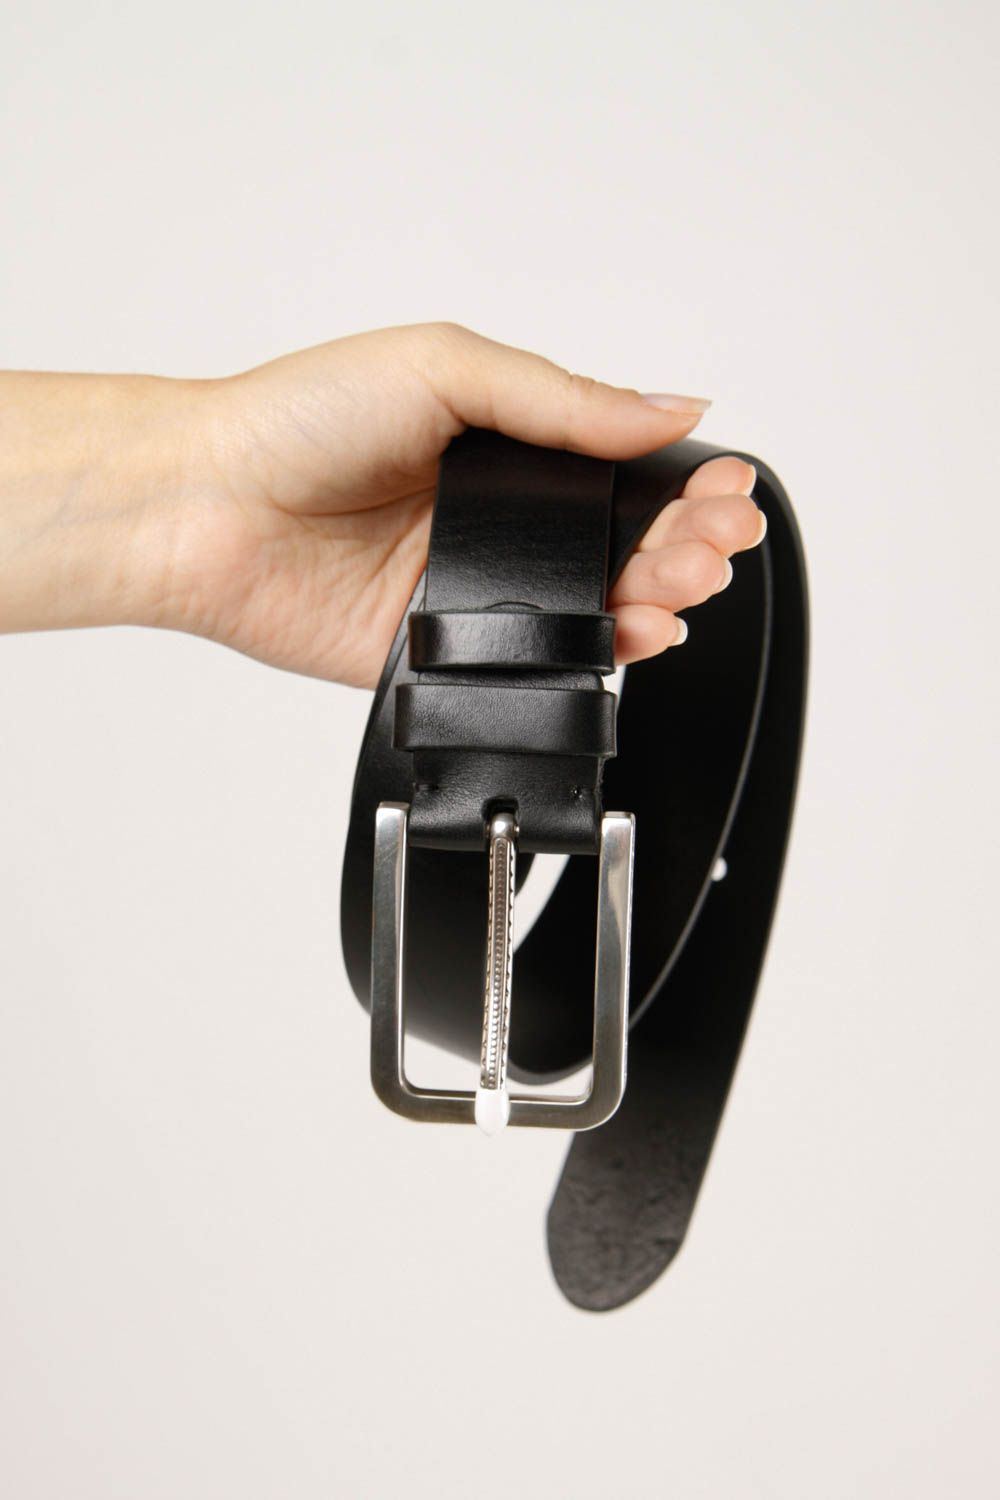 Handmade belt designer accessory gift ideas leather belt for men black belt photo 2